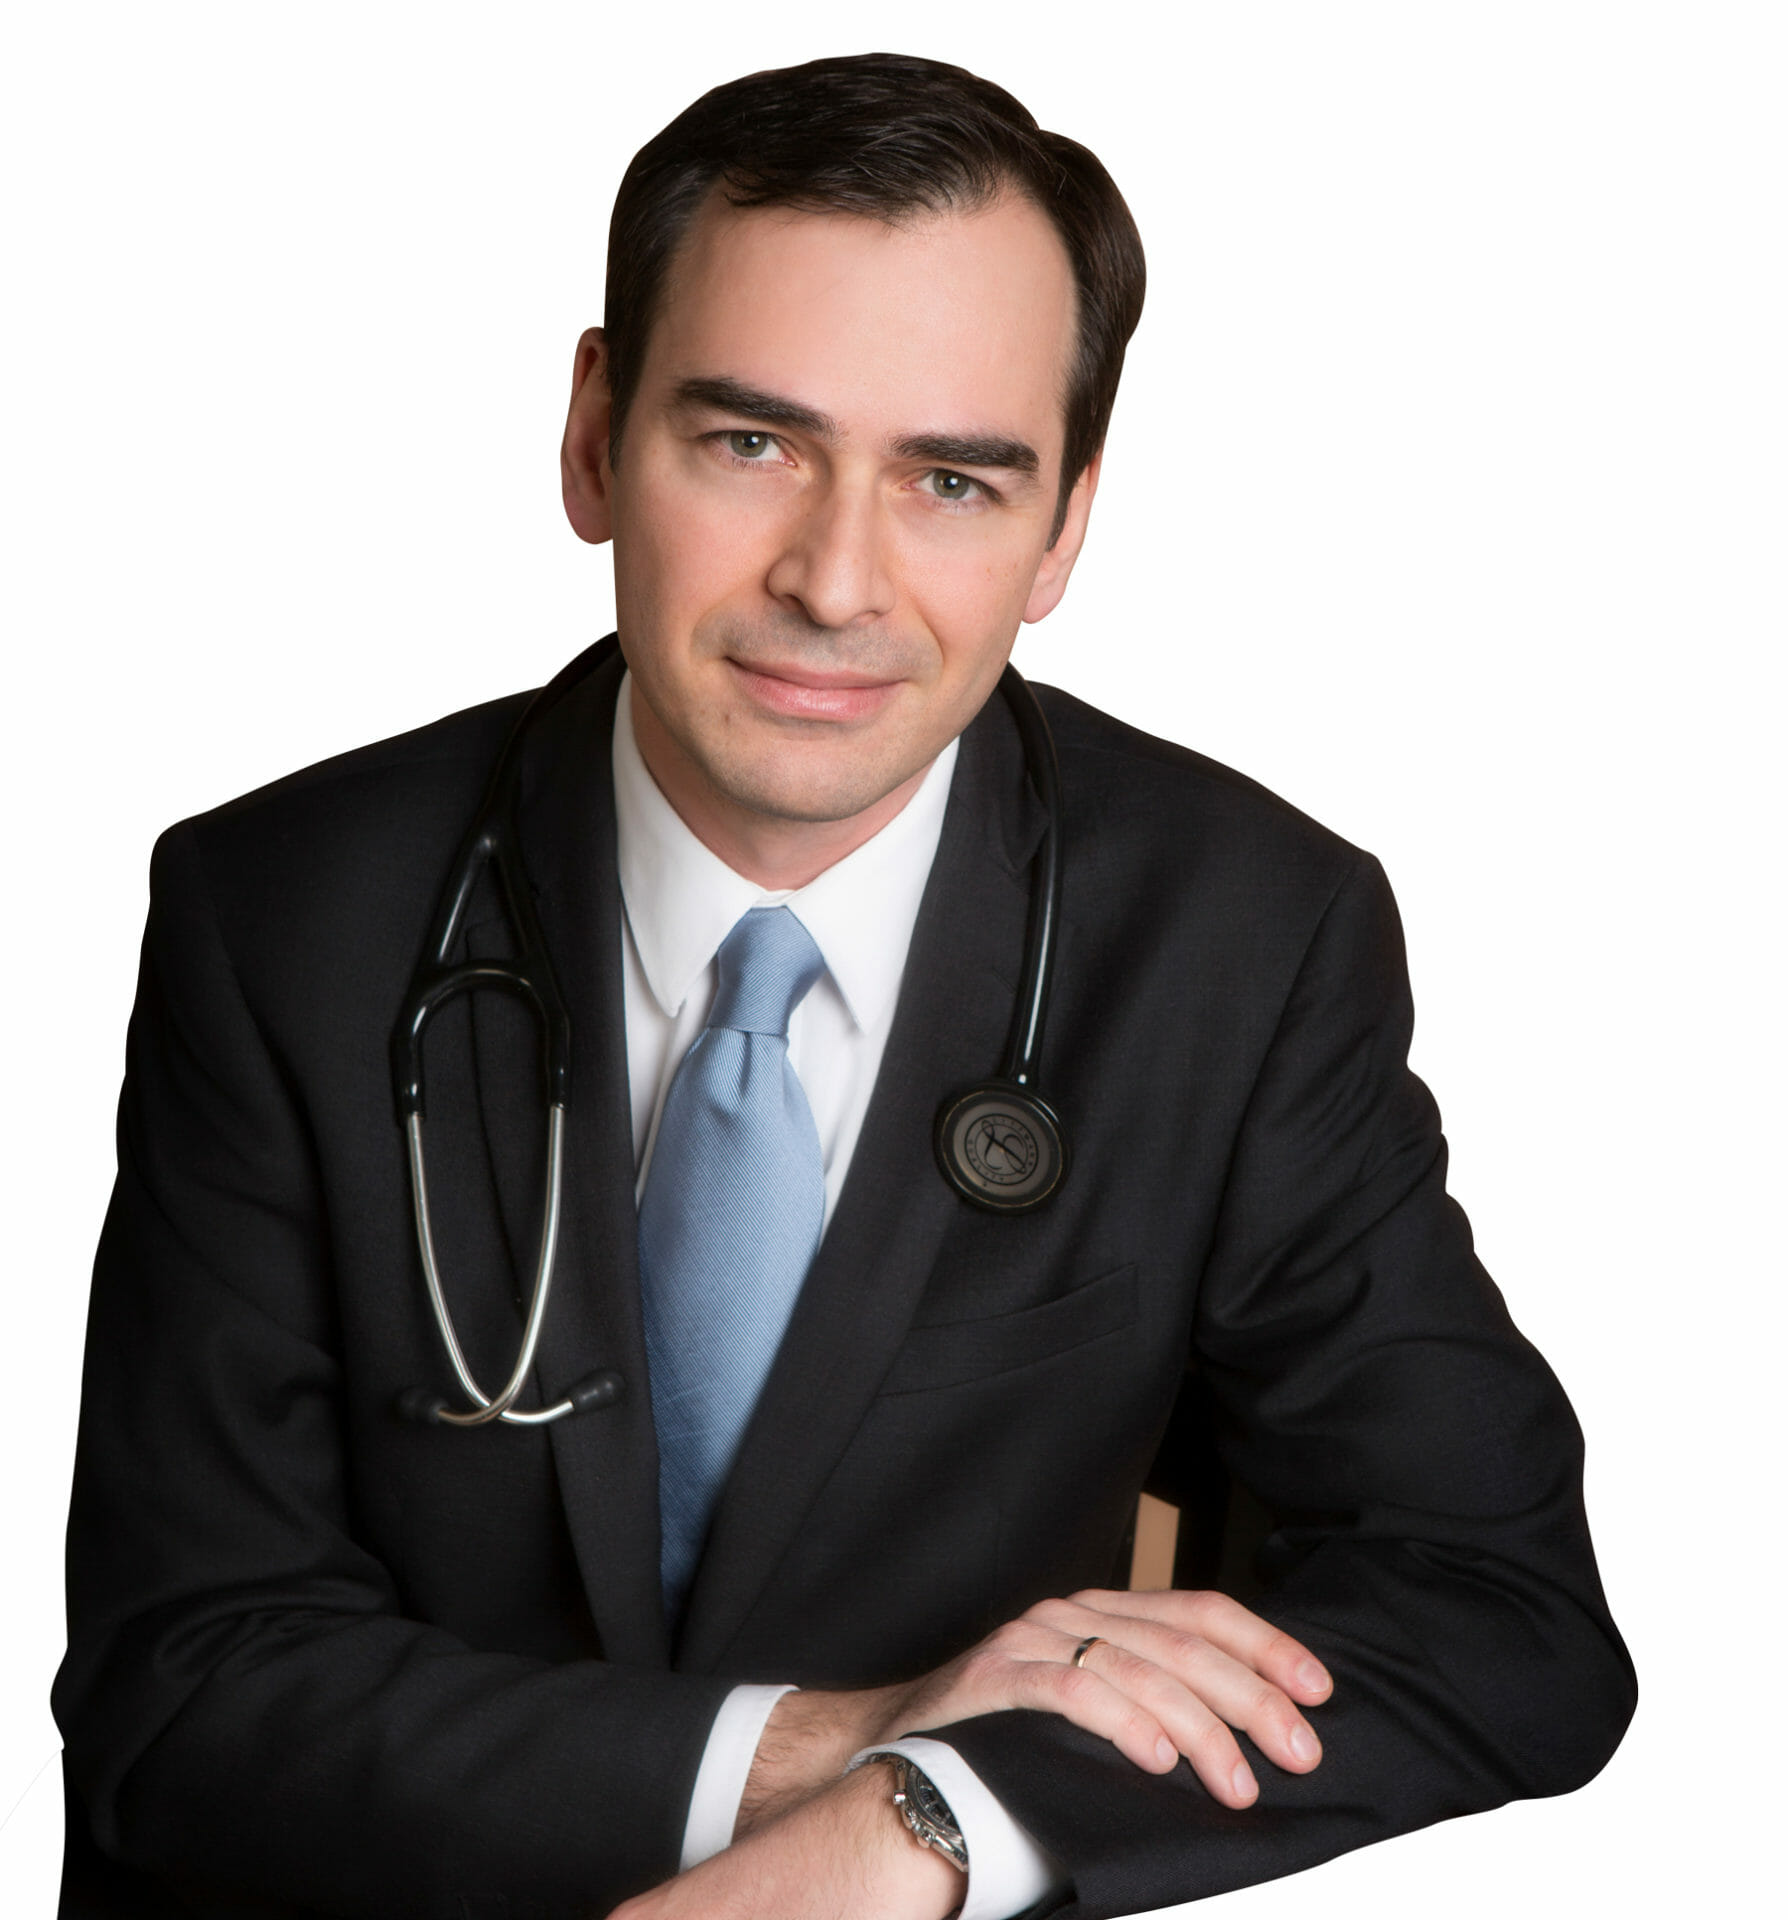 A portrait image of Dr Karagiannis